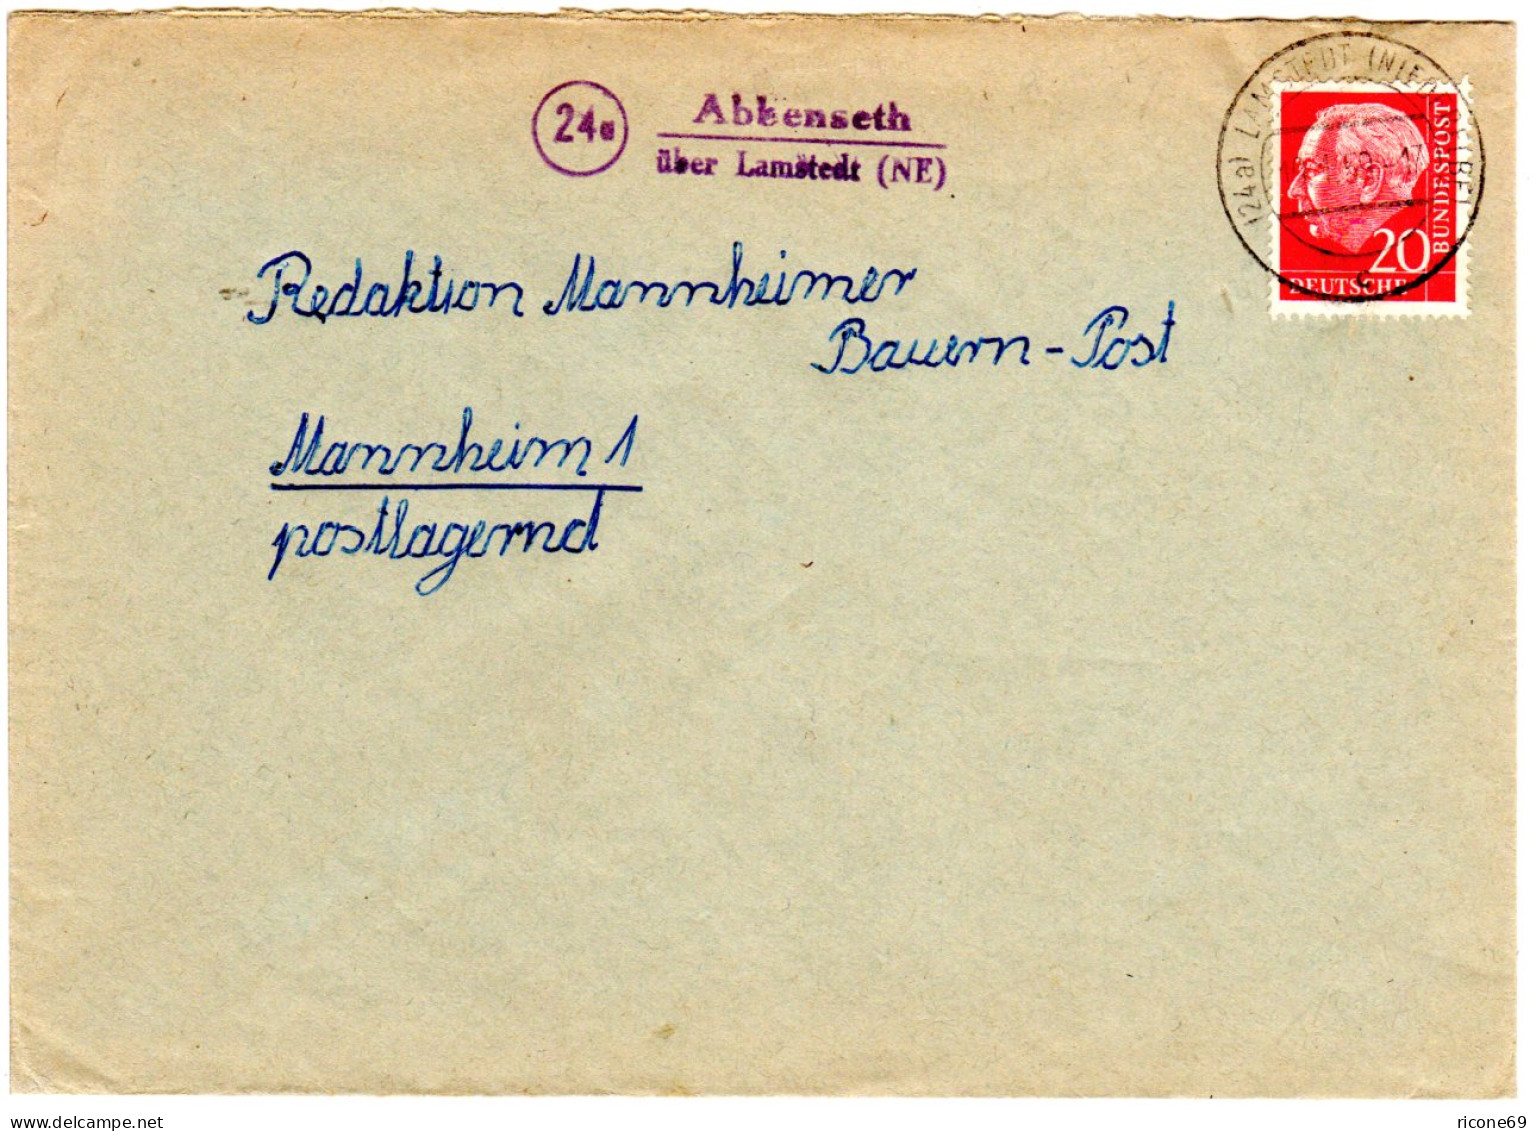 BRD 1959, Landpost Stpl. 24a ABBENSETH über Lamstedt (NE) Auf Brief M. 20 Pf. - Collections